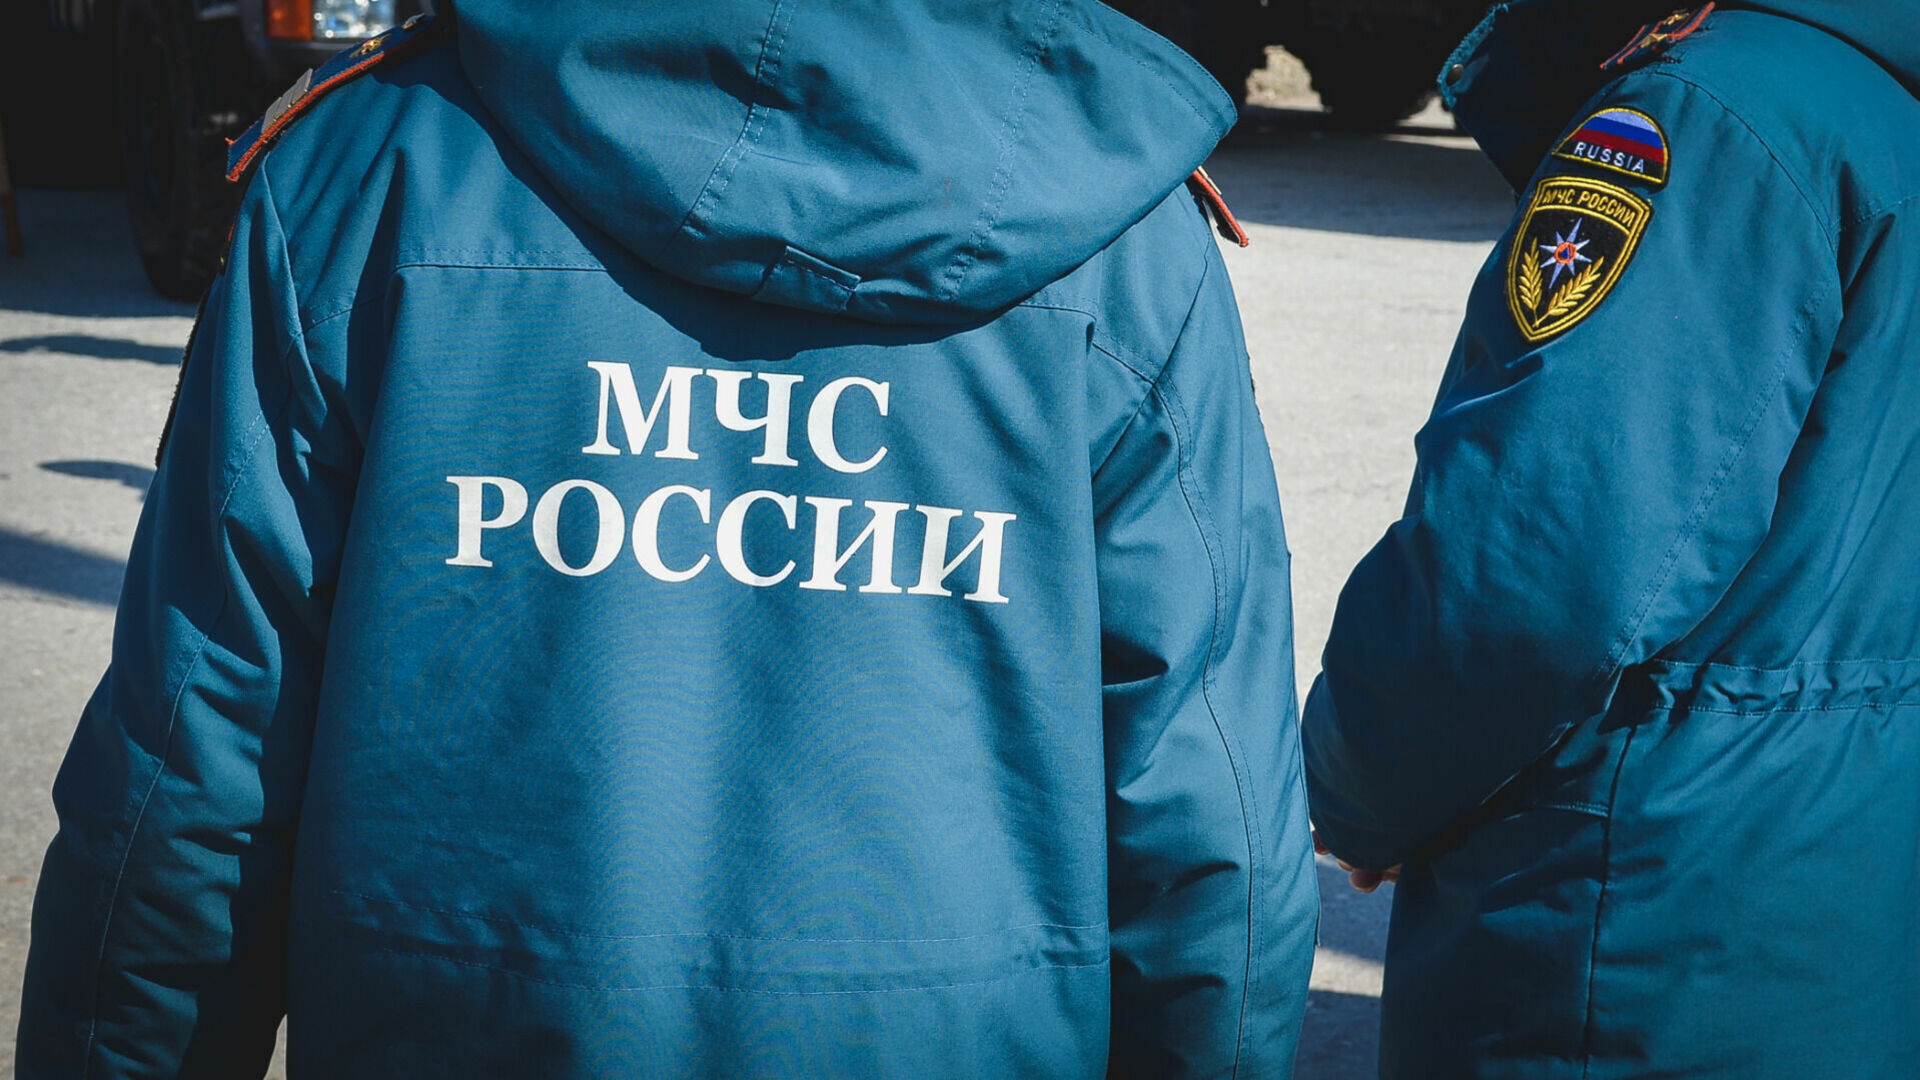 Третий за сутки взрыв газа произошел в России